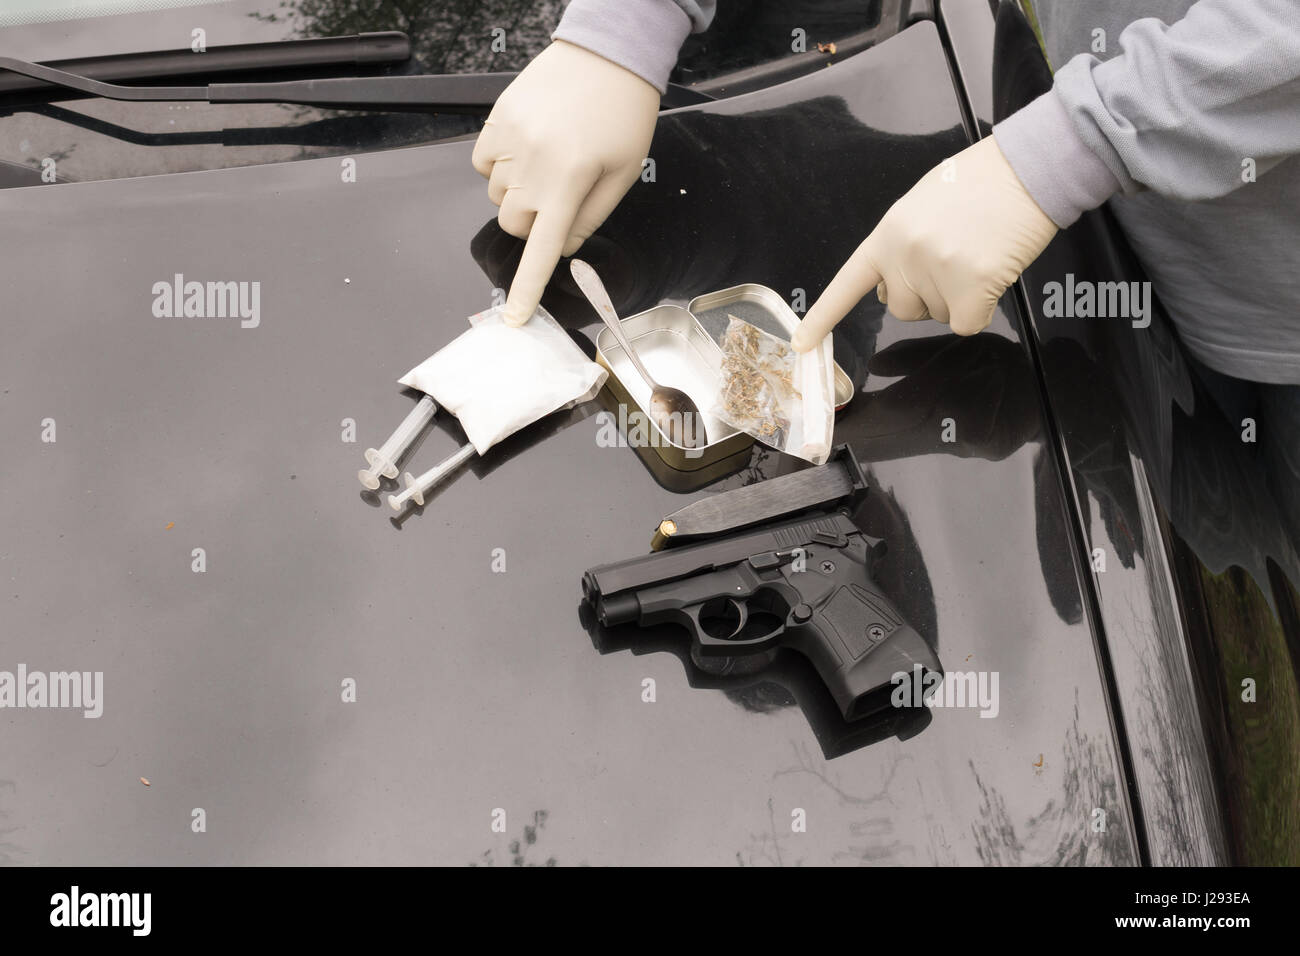 Molte delle sostanze sequestrate dalla polizia austriaca sulla tavola con armi, criminalità concessionario Foto Stock